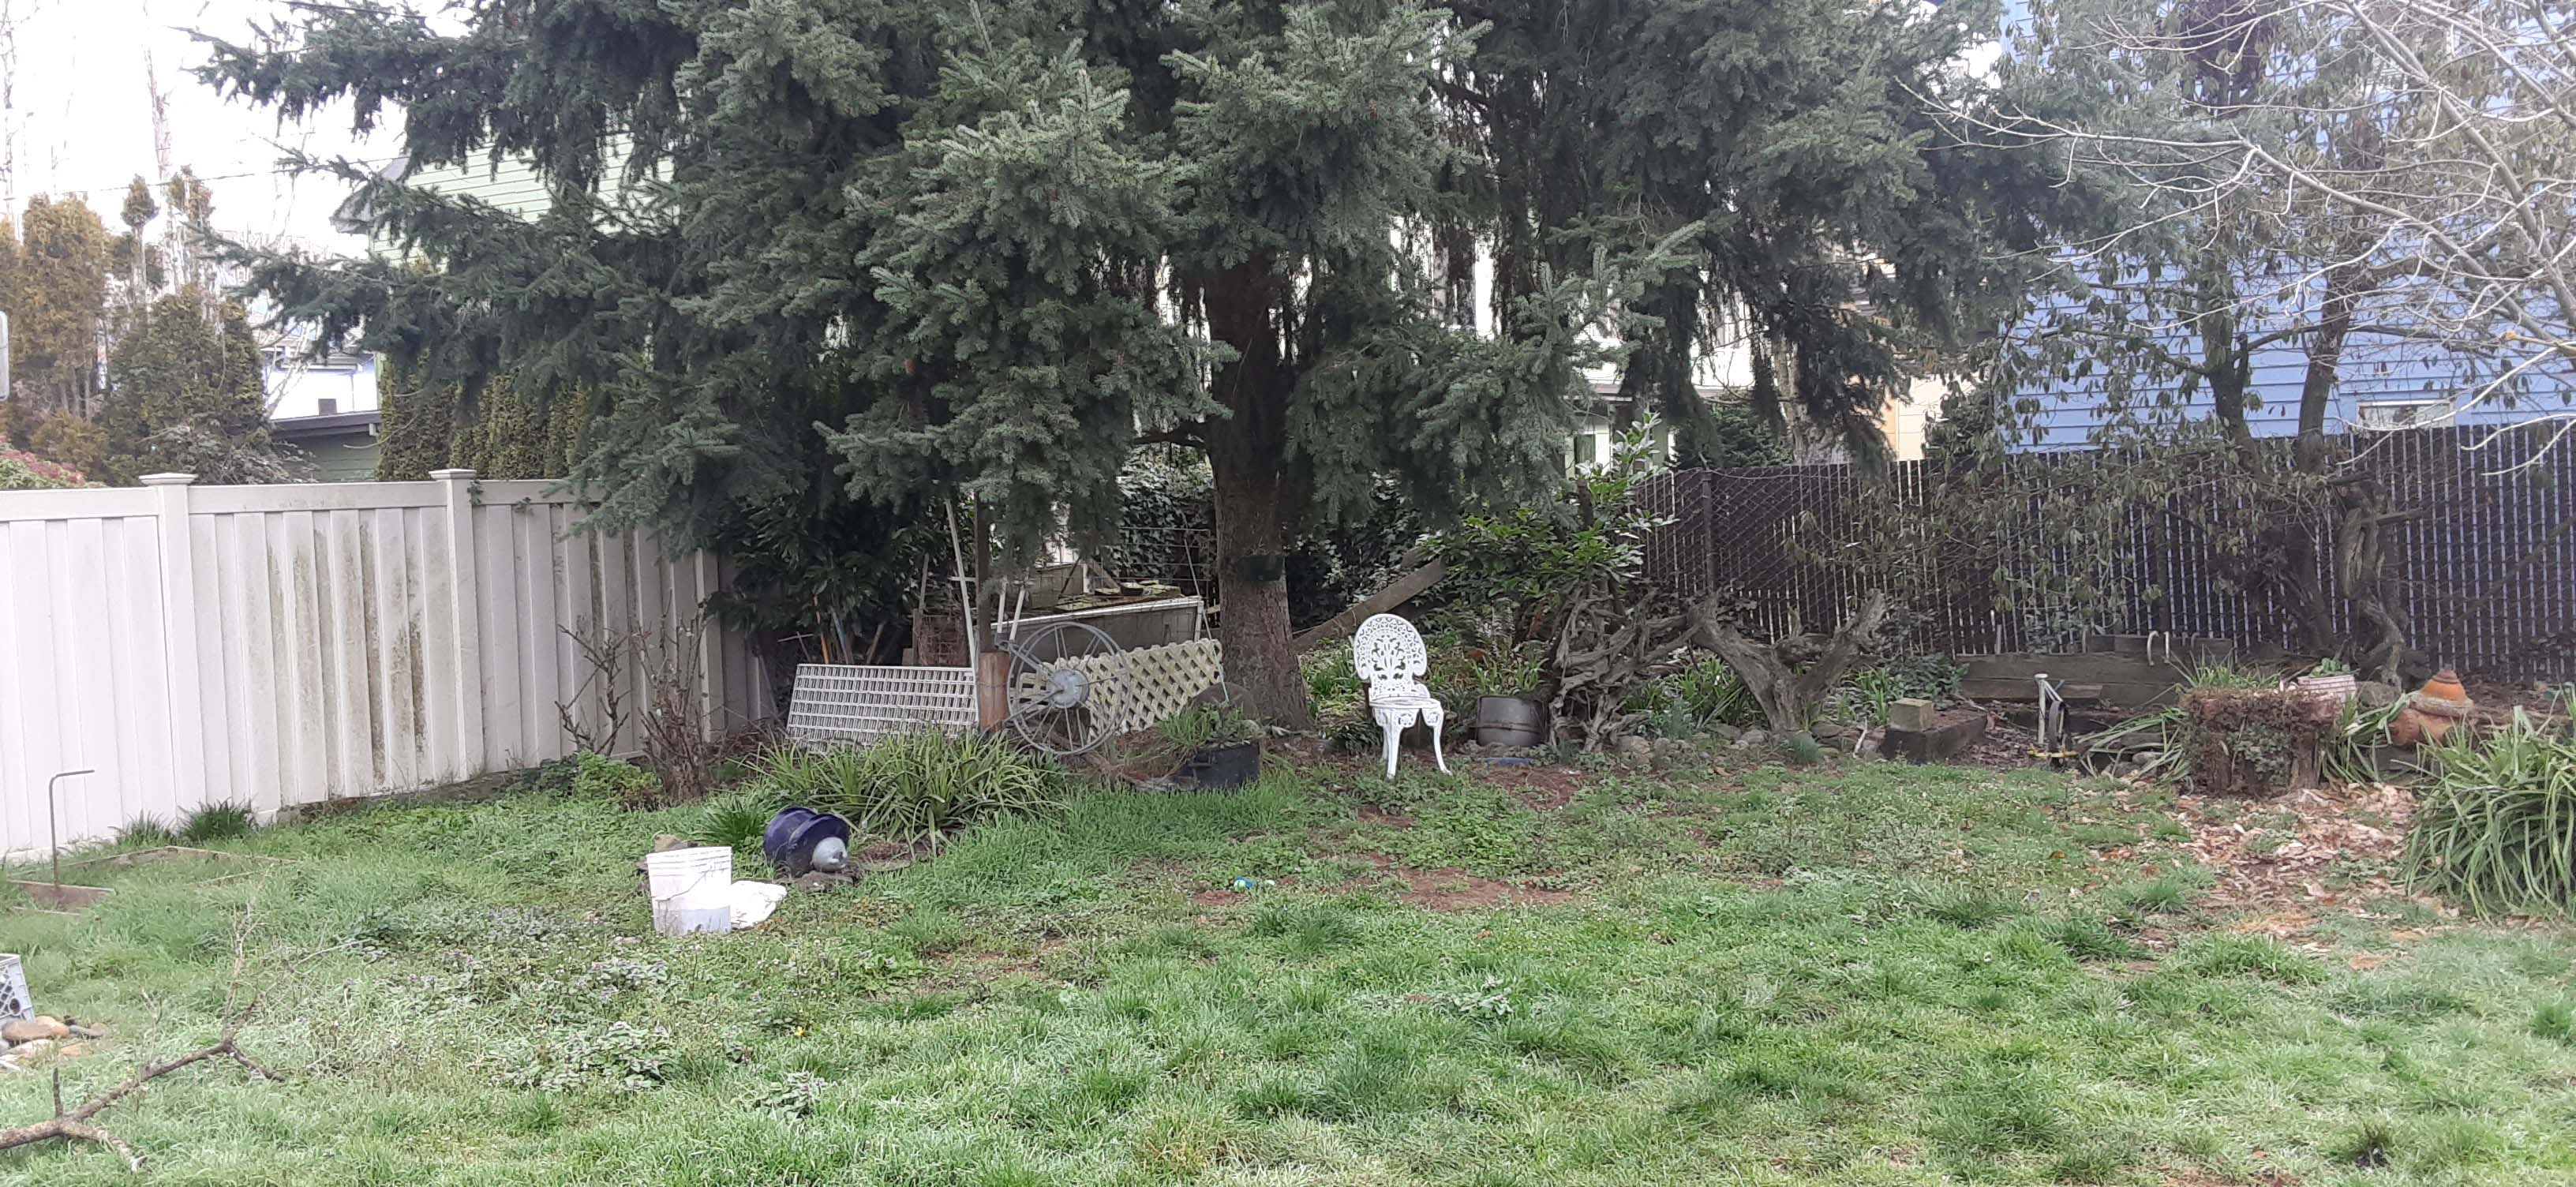 Unkept and overgrown backyard area